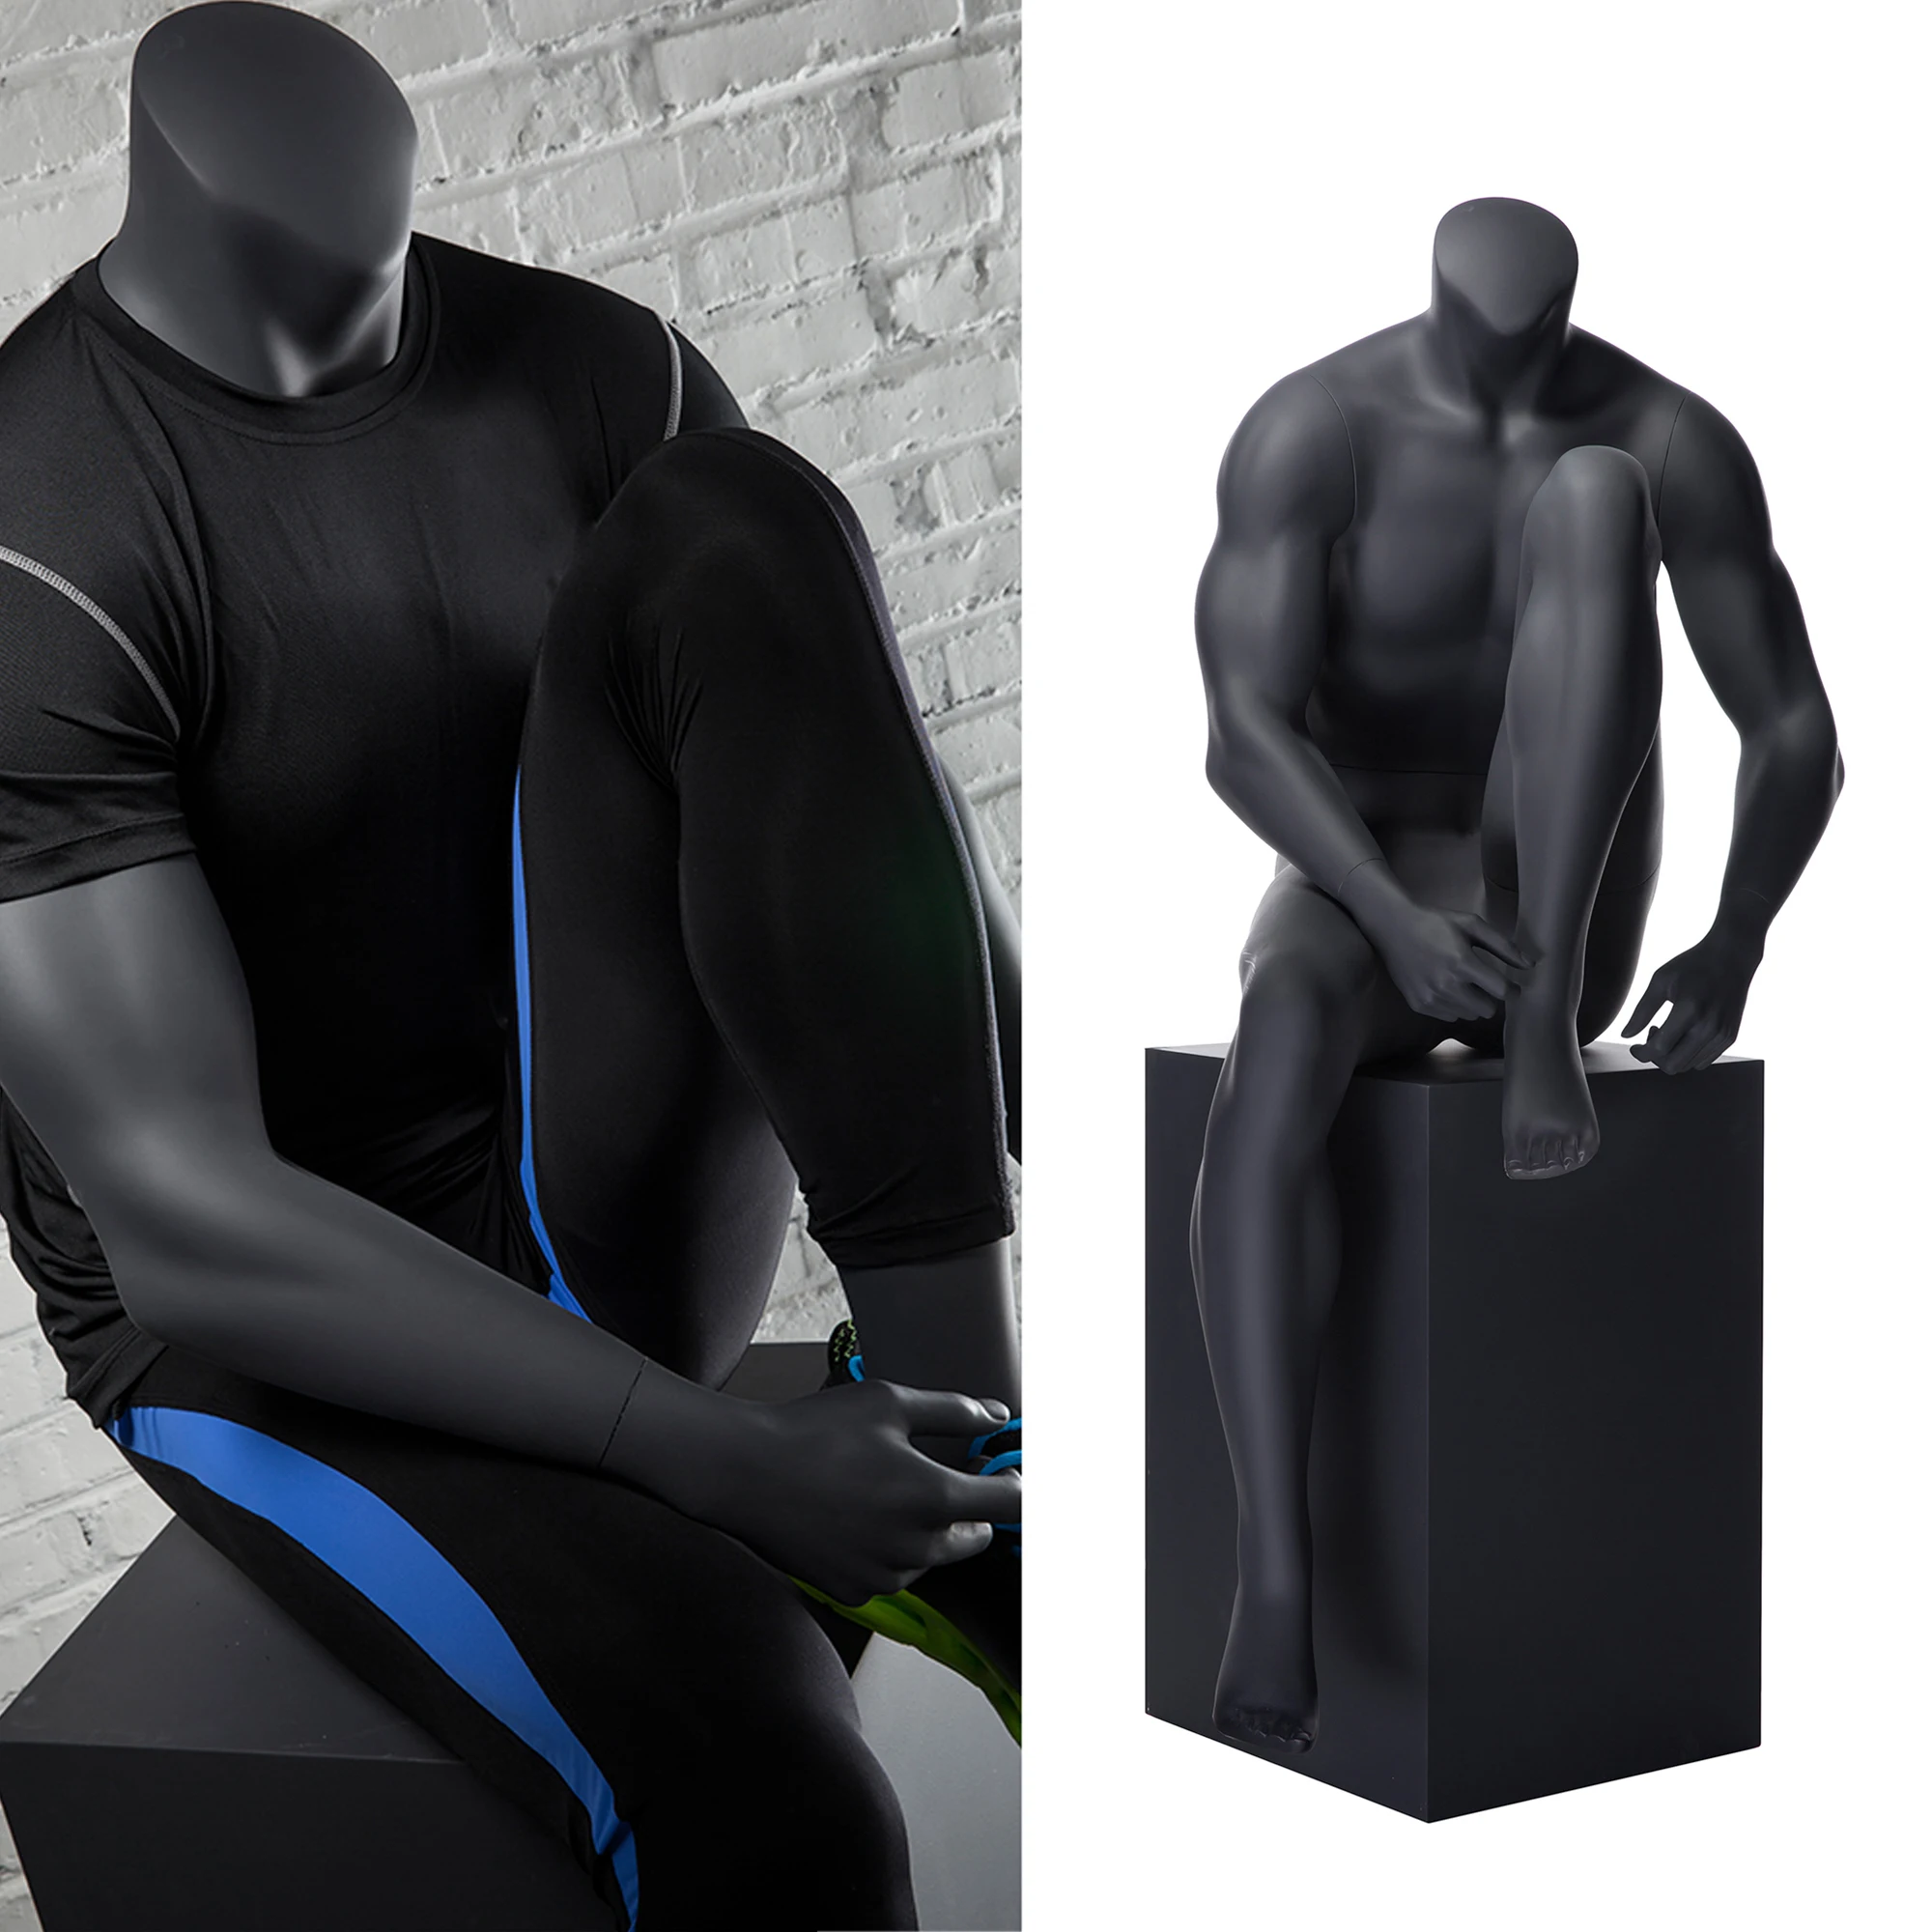 Mannequin De Sport Musculaire Pour Hommes, Modèle Complet Du Corps,  Vêtements De Sport, Personnalisé - Mannequins - AliExpress